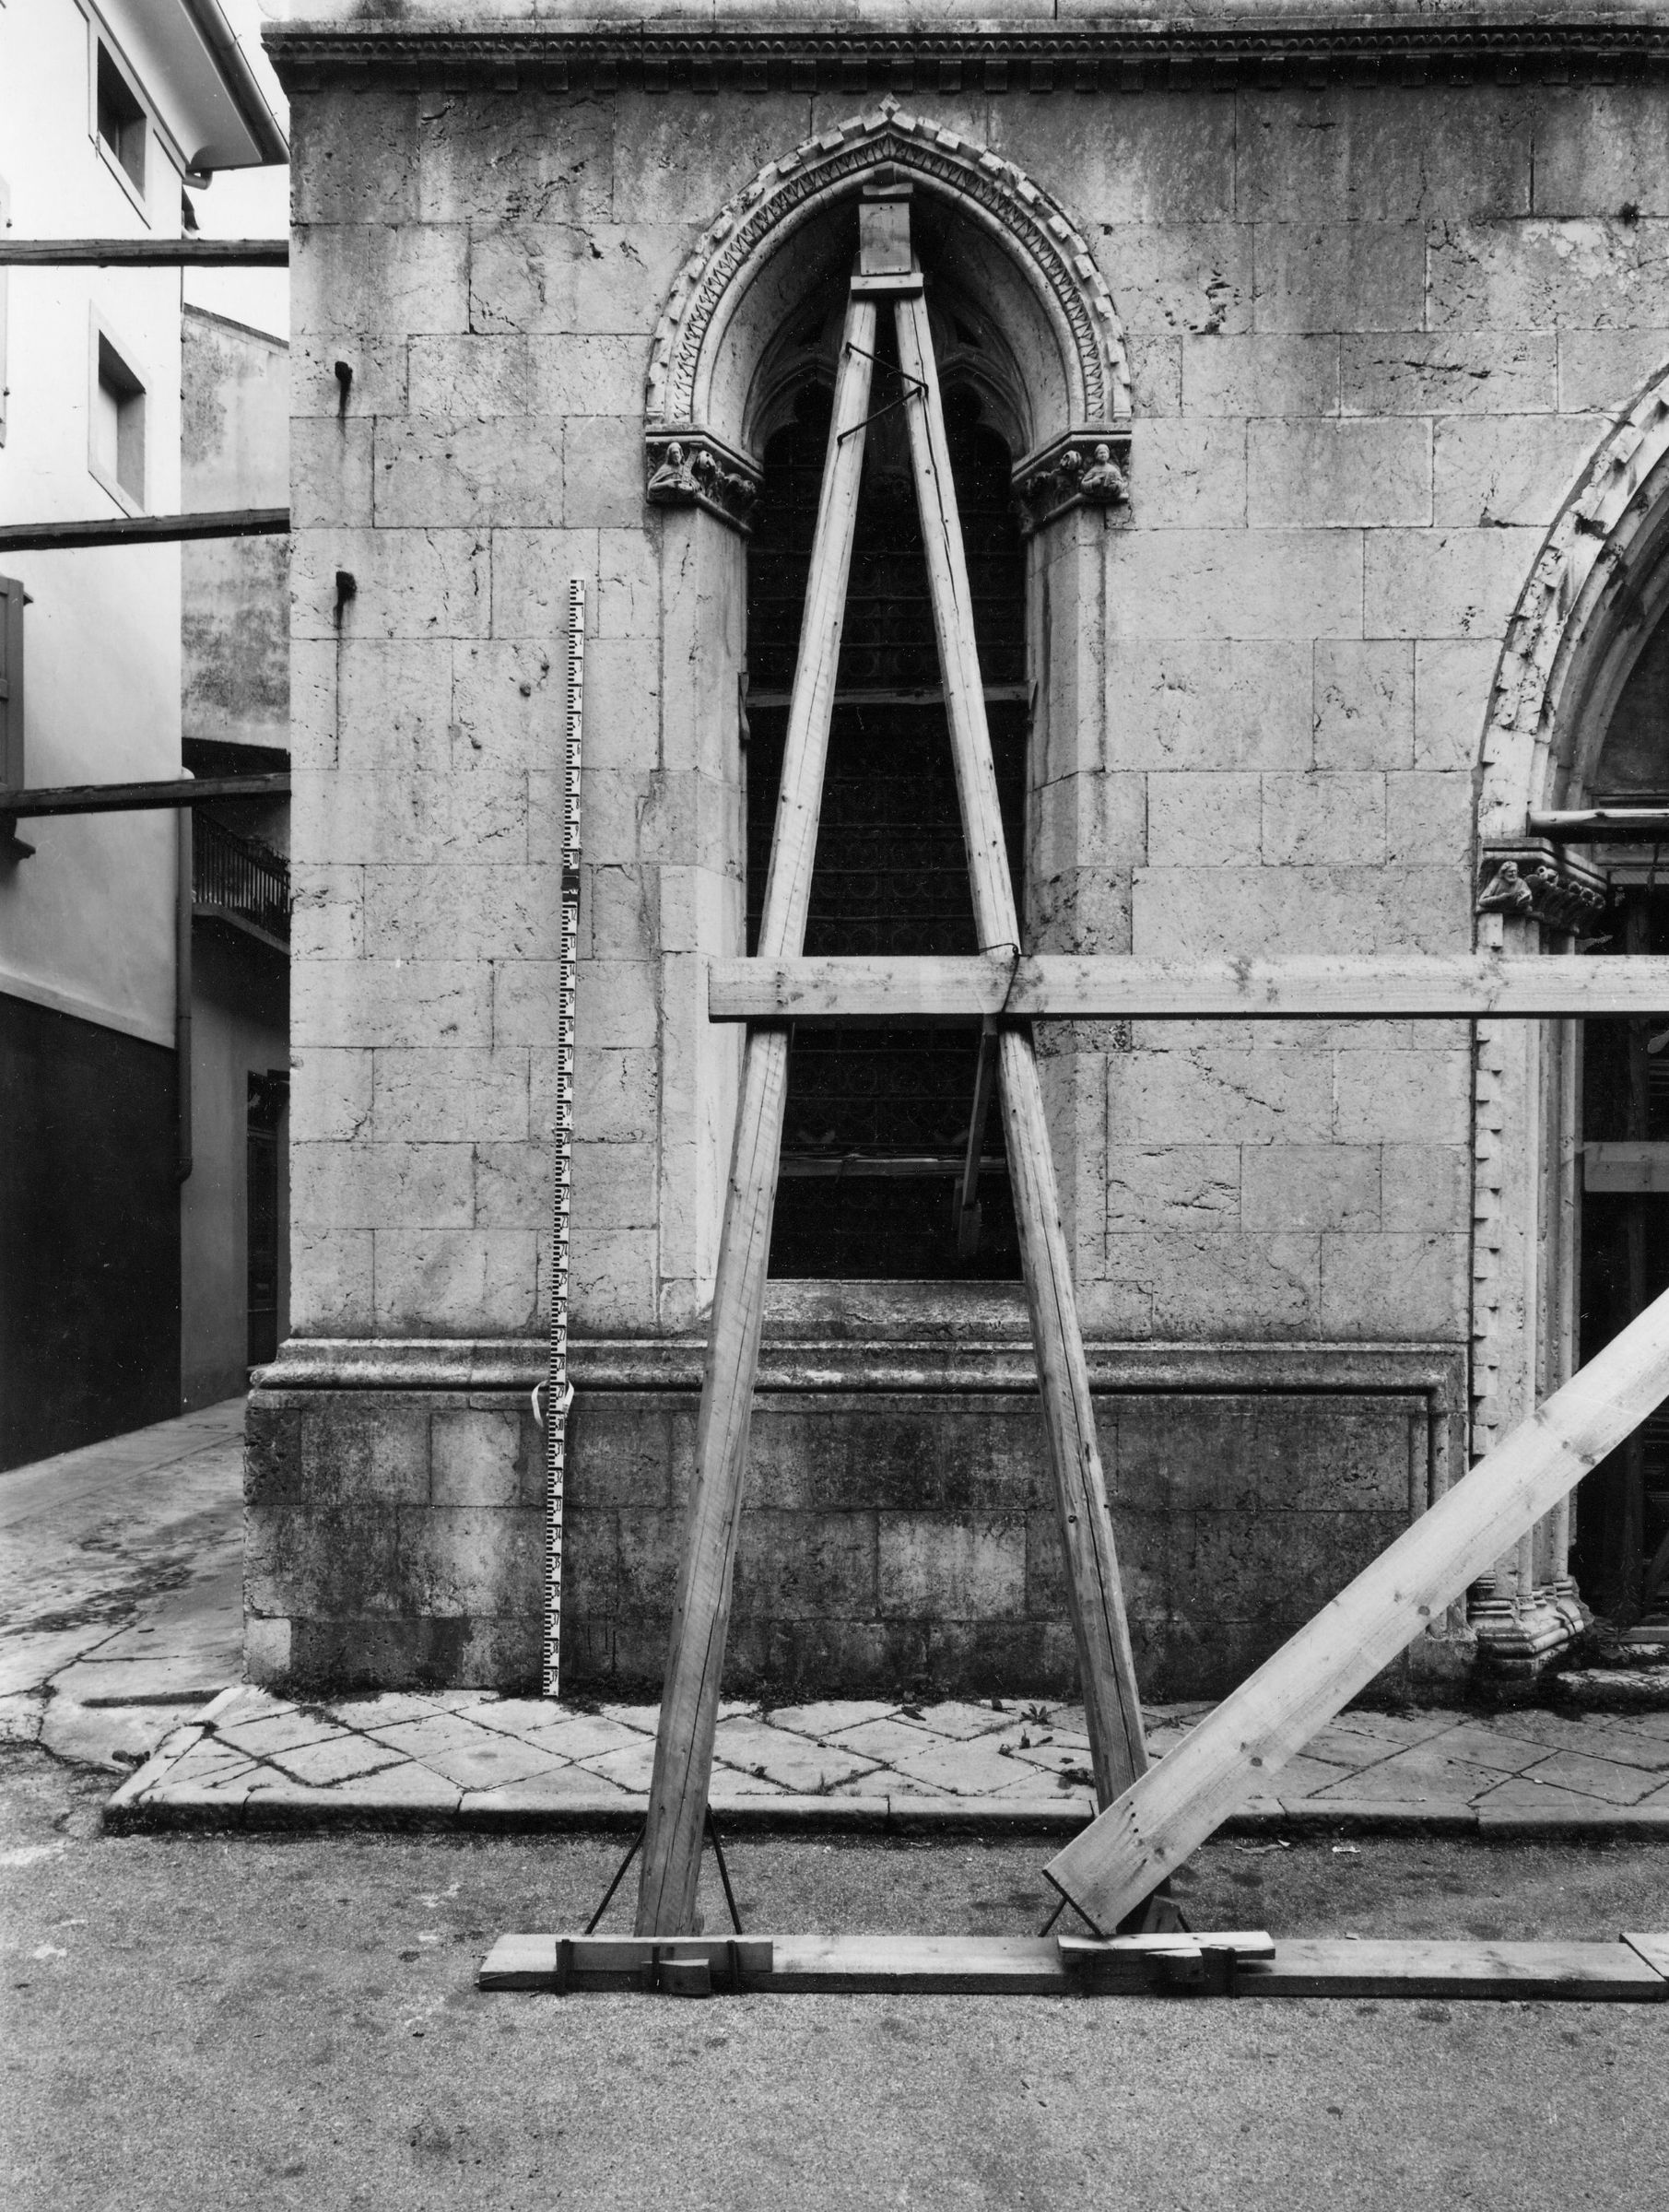 Fotografo non identificato, San Daniele del Friuli - Terremoto, Chiesa di S. Antonio, facciata, vista di dettaglio, esterno, 1976, gelatina ai sali d'argento/pellicola (acetati), 6x6cm, F040134